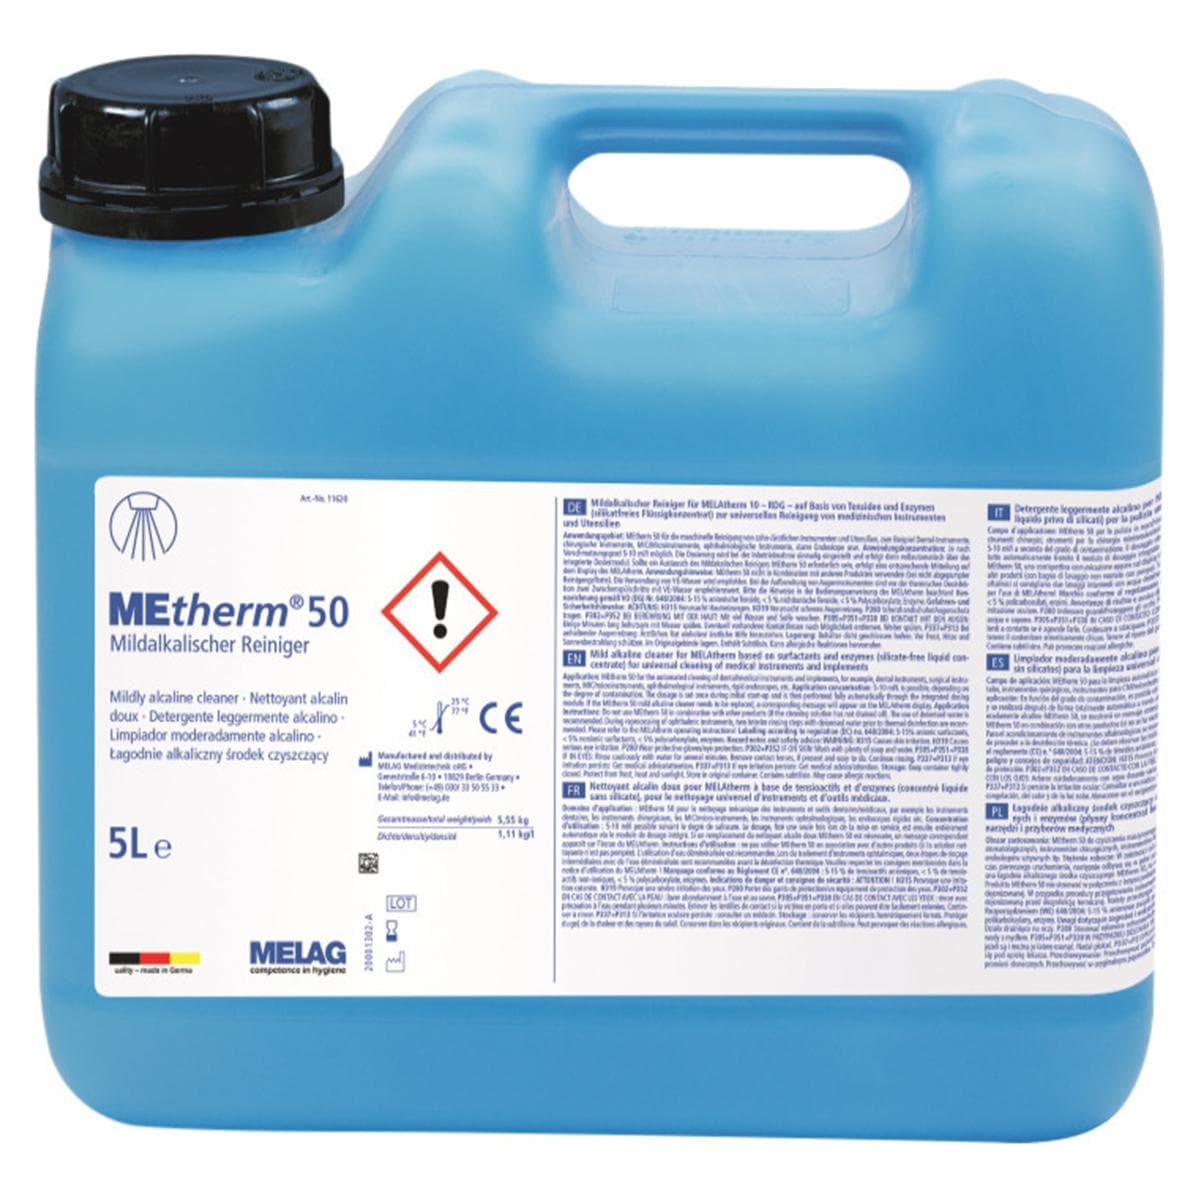 MEtherm 50 mild alkalische reiniger - REF. 11620 - Can, 5 liter